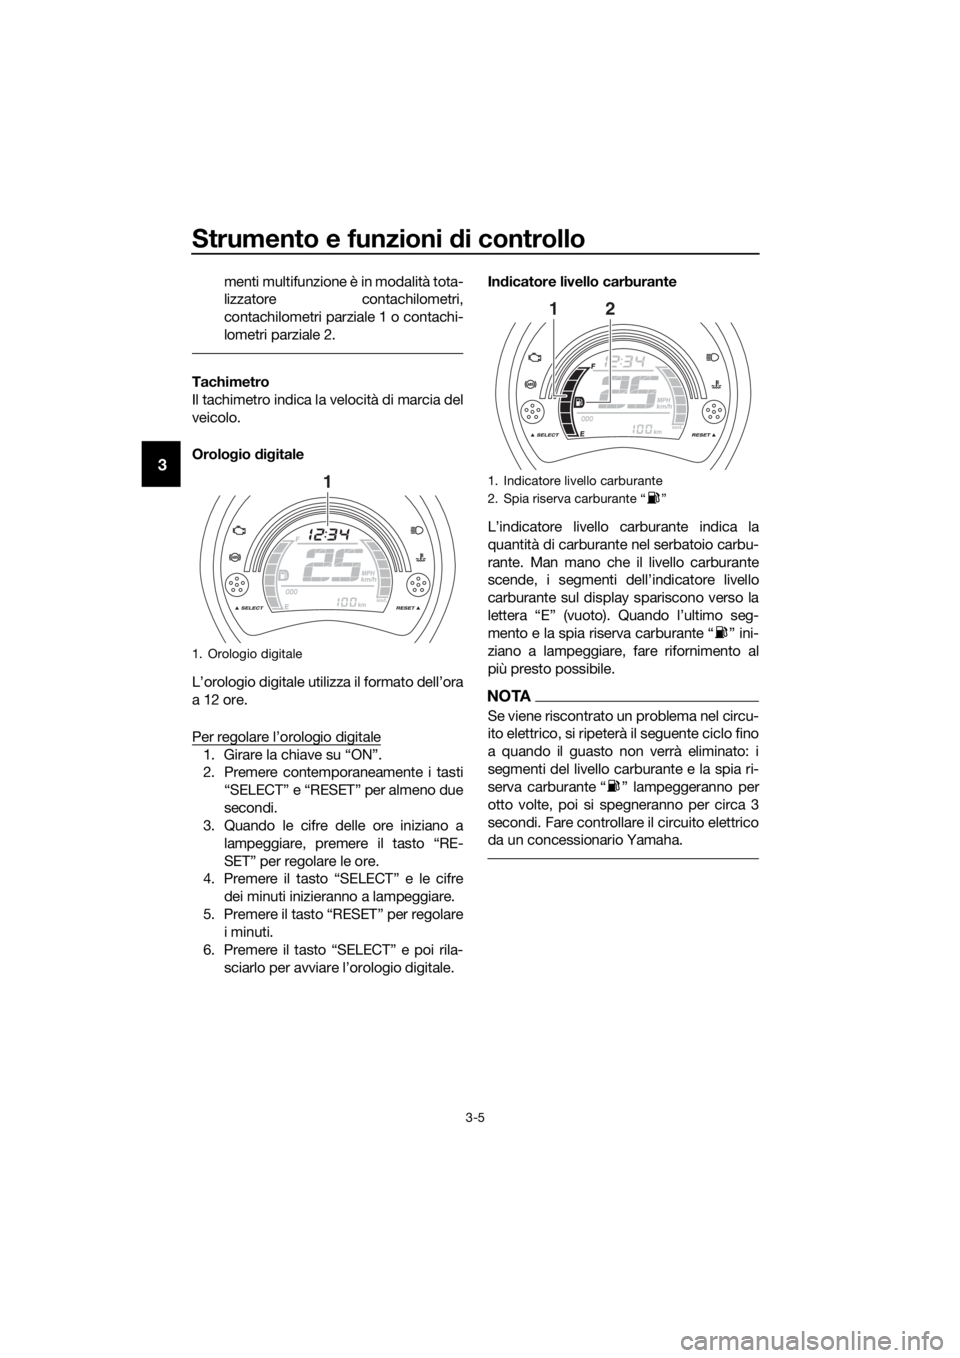 YAMAHA NMAX 150 2019  Manuale duso (in Italian) Strumento e funzioni di controllo
3-5
3
menti multifunzione è in modalità tota-
lizzatore contachilometri,
contachilometri parziale 1 o contachi-
lometri parziale 2.
Tachimetro
Il tachimetro indica 